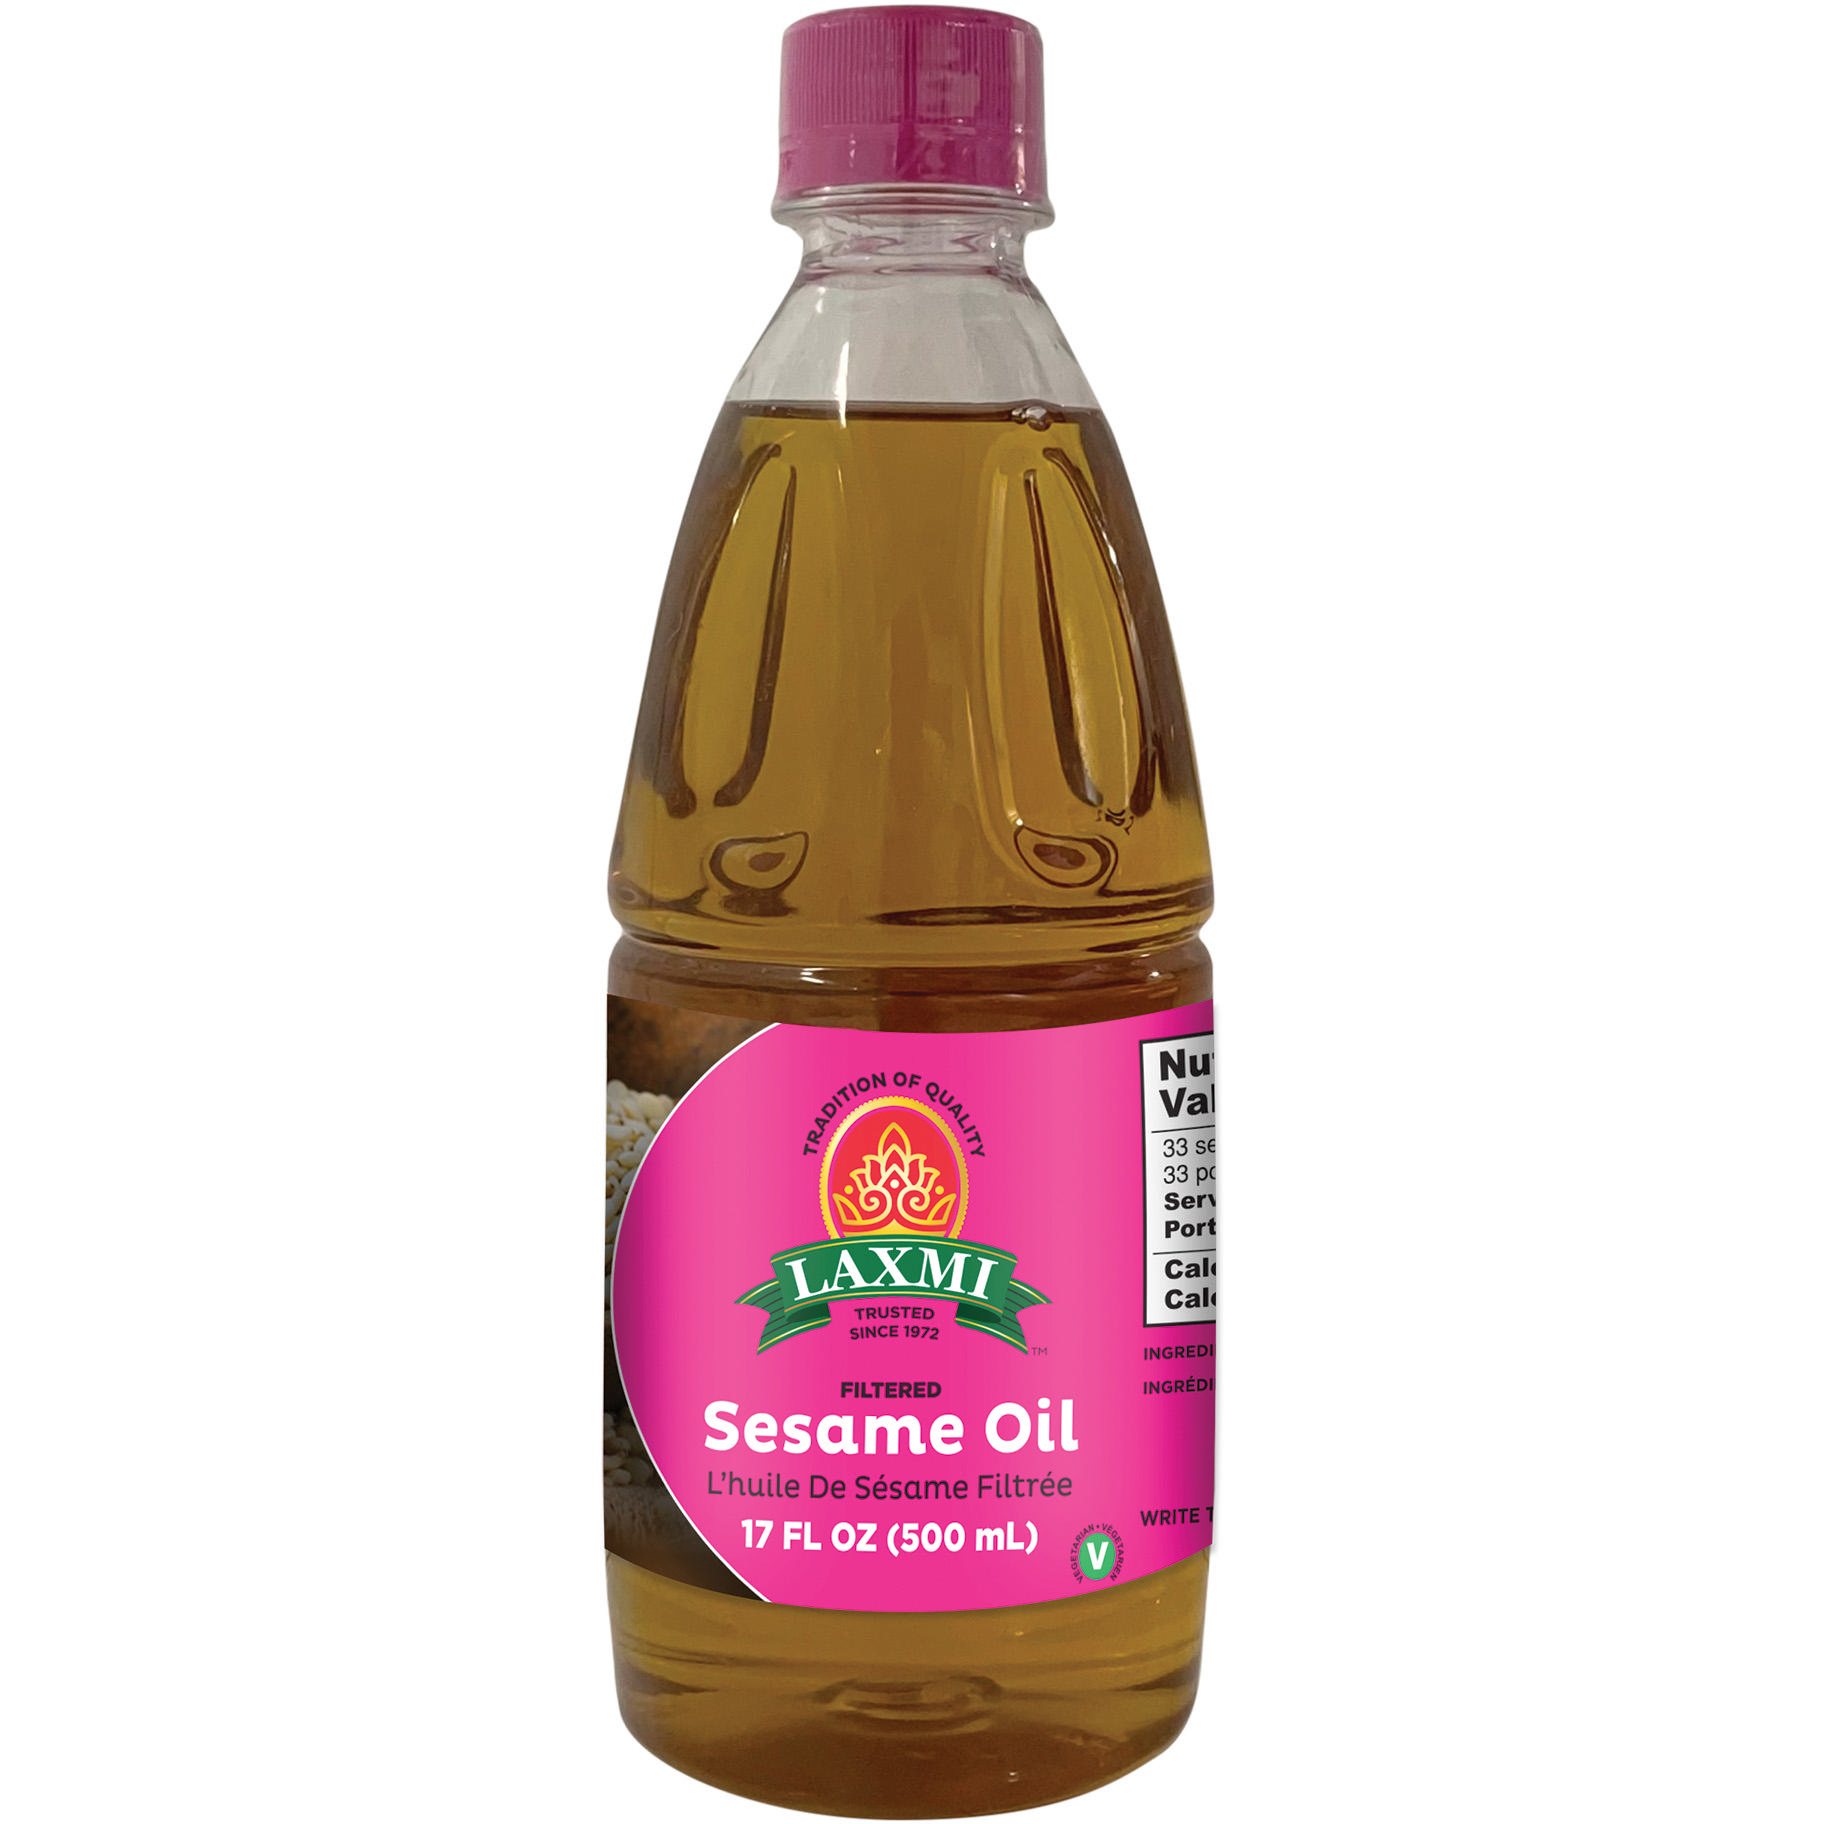 Laxmi Sesame Oil - 17 Fl Oz (500 Ml)